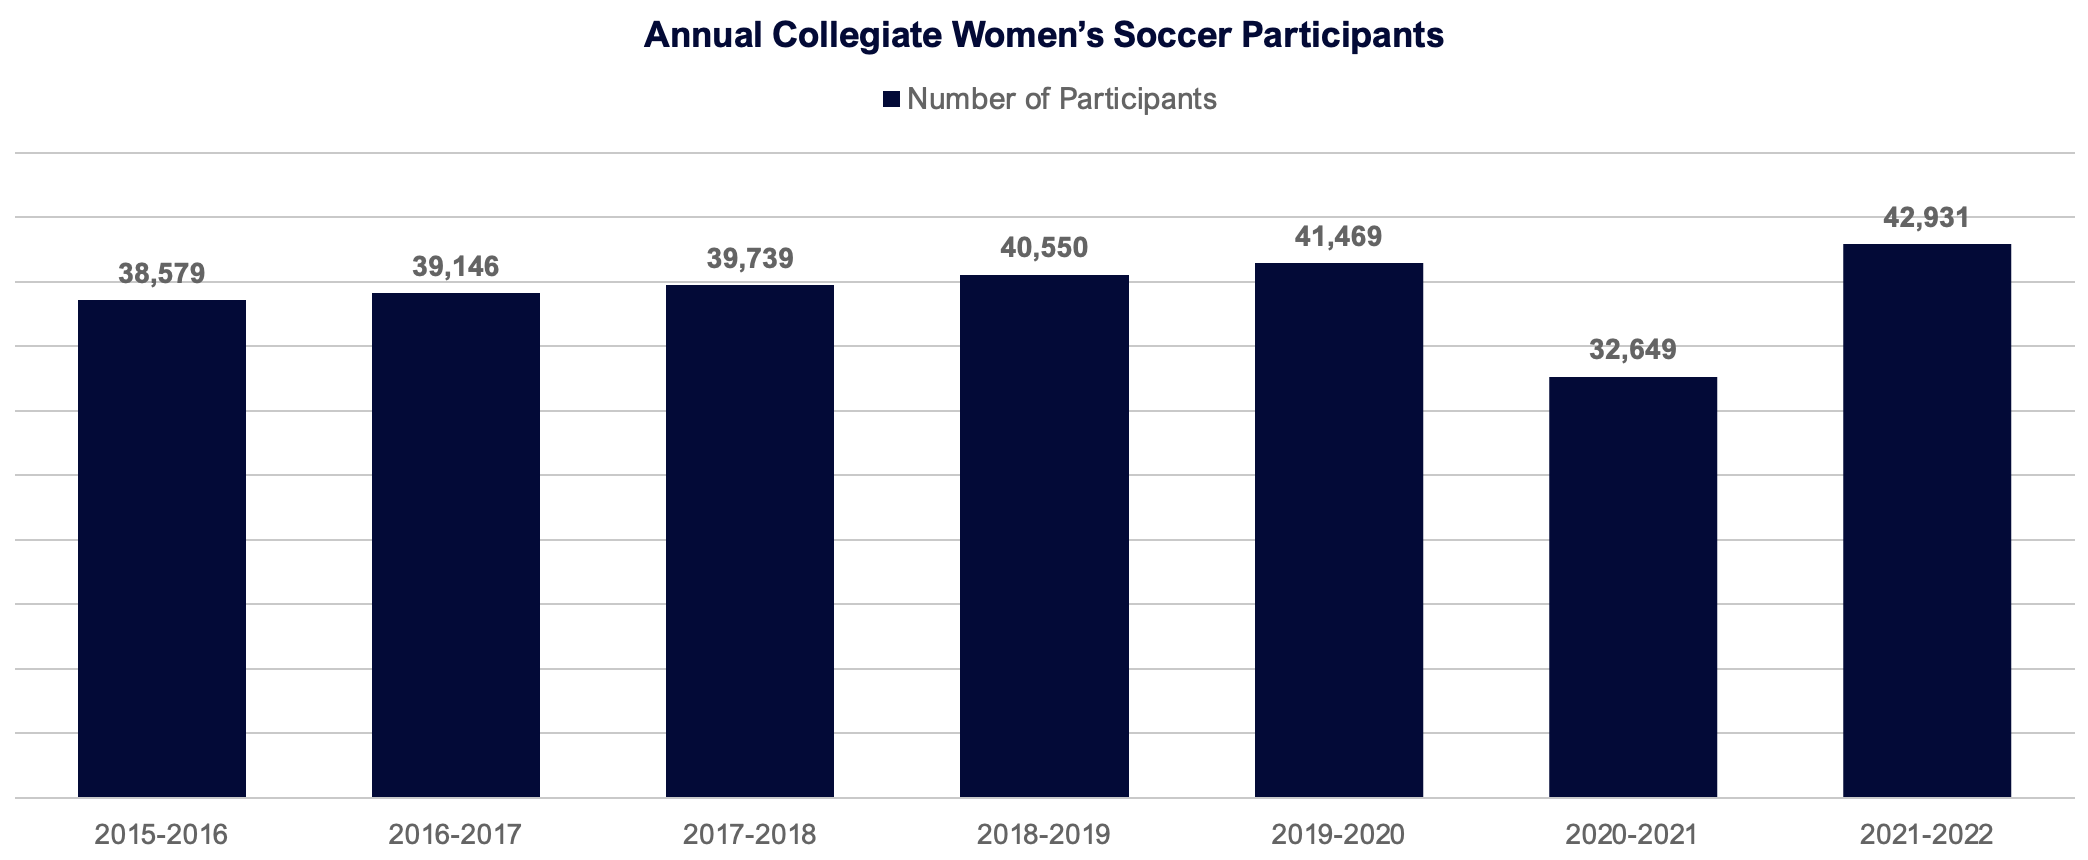 Annual Collegiate Women's Soccer Participants